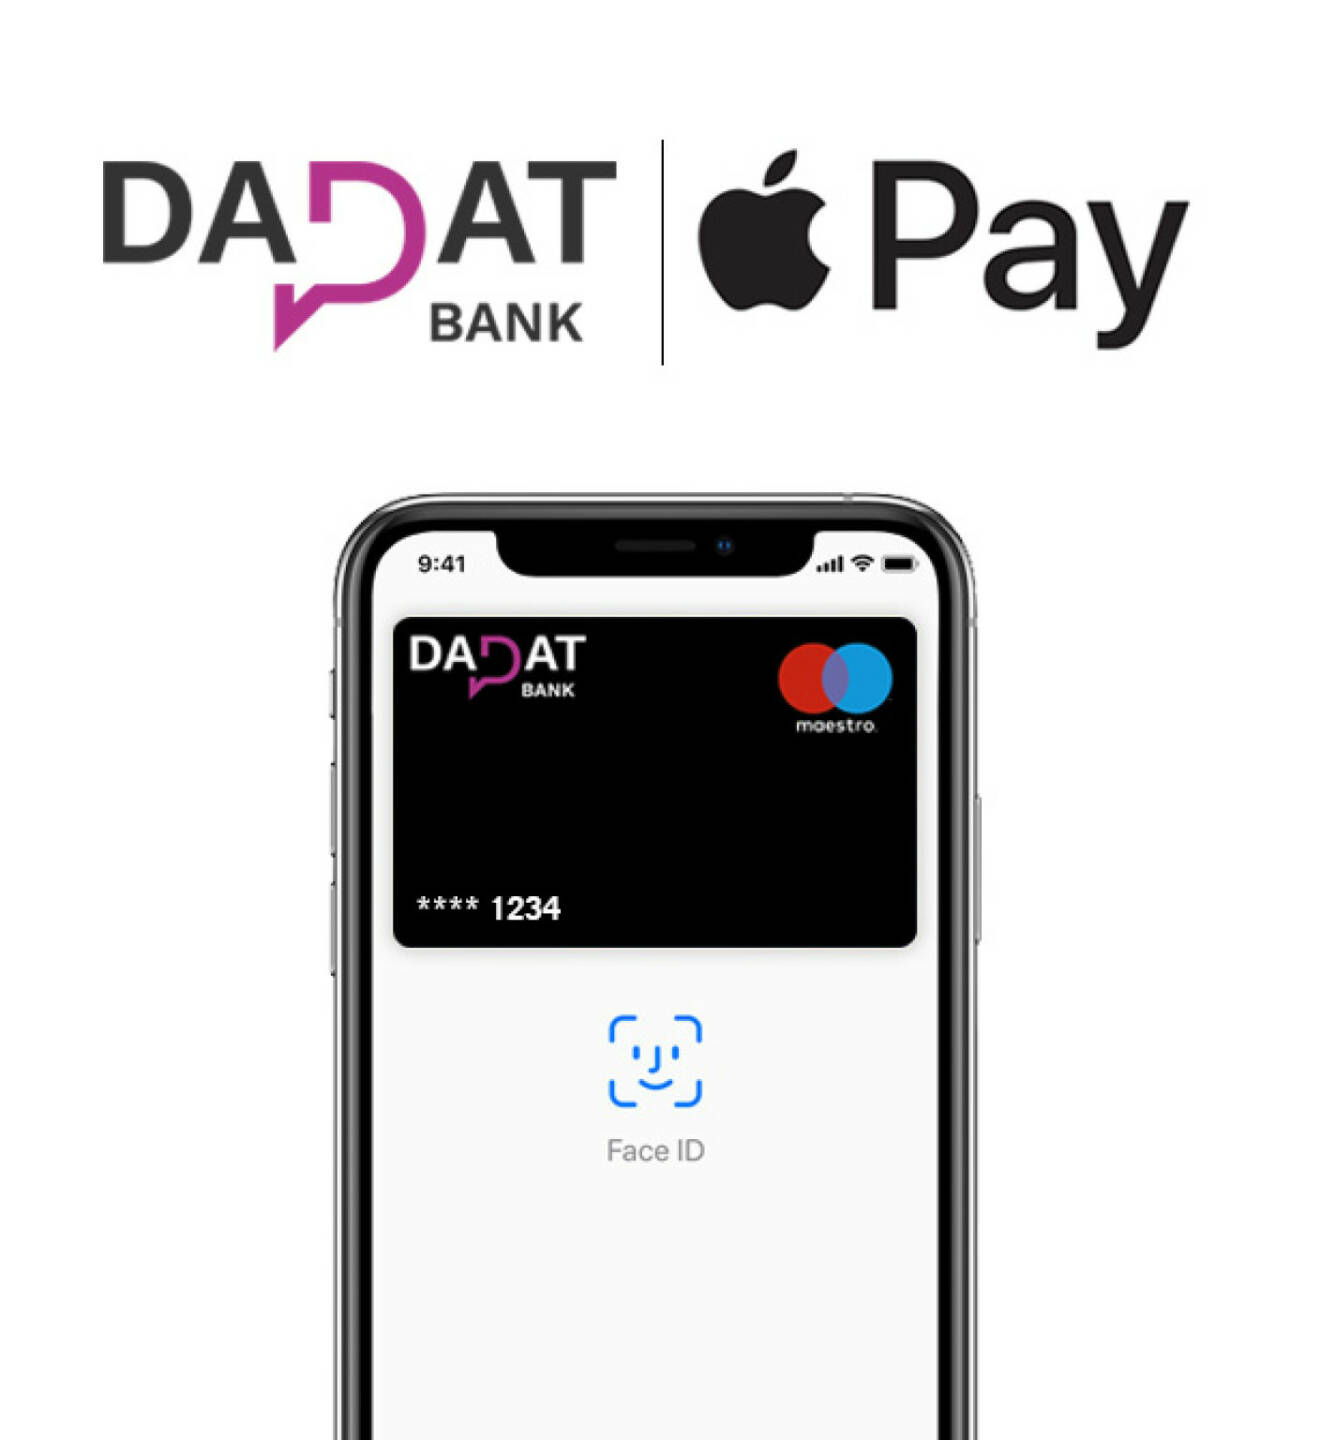 Die österreichische DADAT Bank ermöglicht Kunden ab sofort auch sicheres mobiles Zahlen via “Apple Pay”. Bildquelle: DADAT Bank